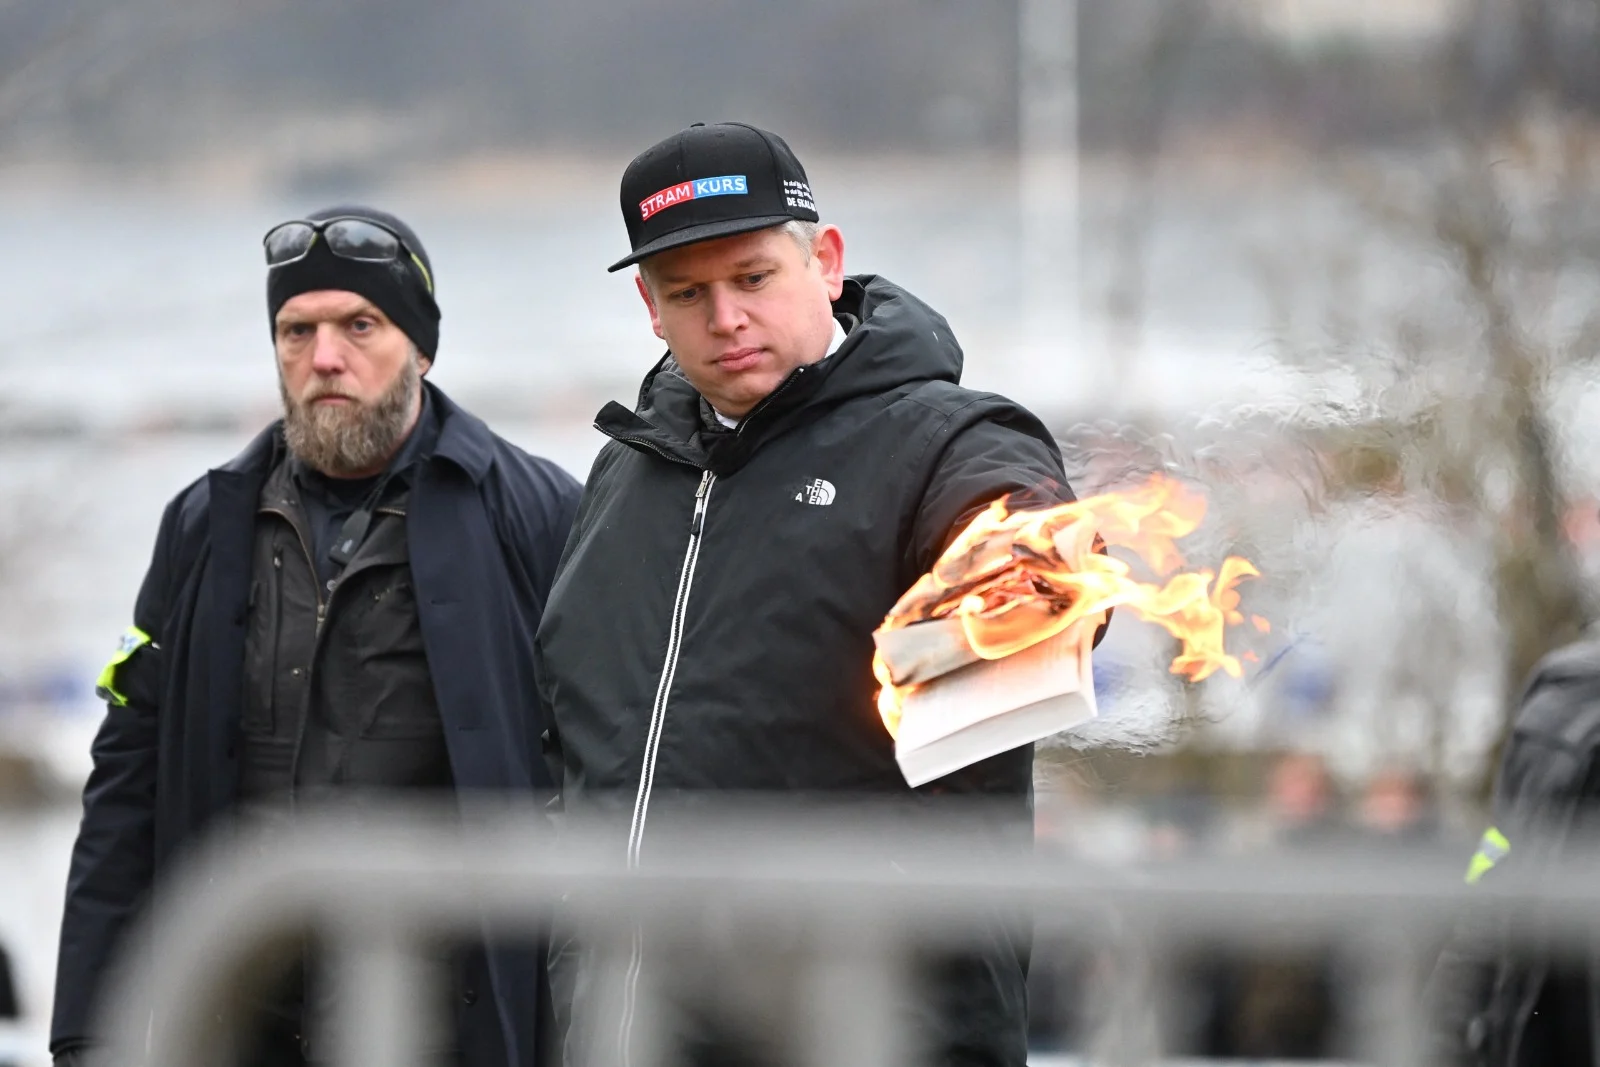 שריפת הקוראן בשוודיה